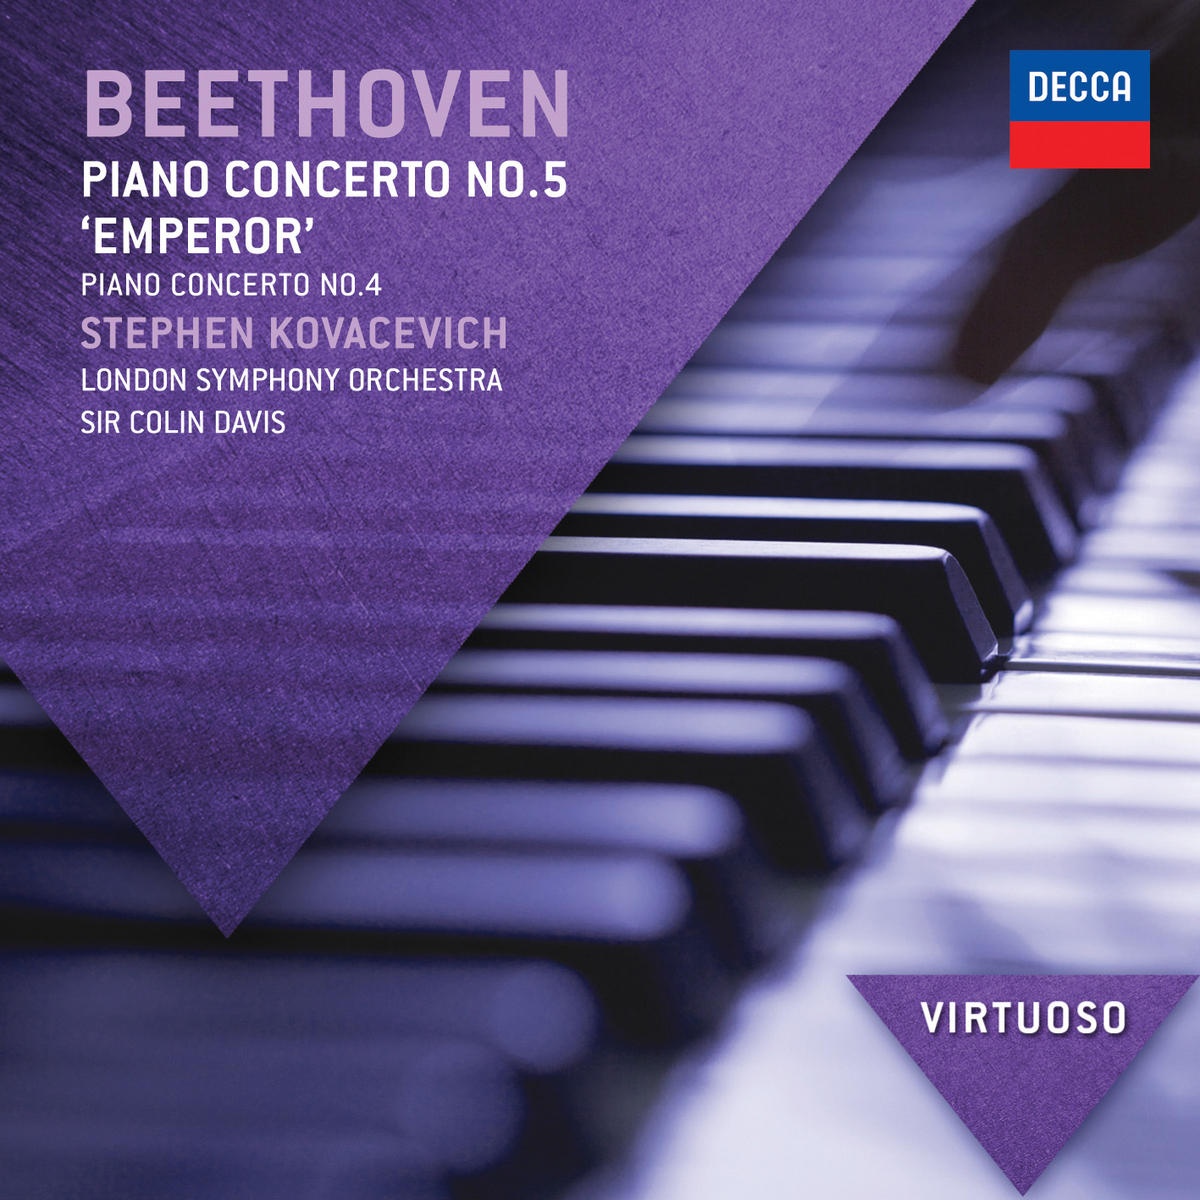 Beethoven: Piano Concerto No.4 in G, Op.58 - 2. Andante con moto